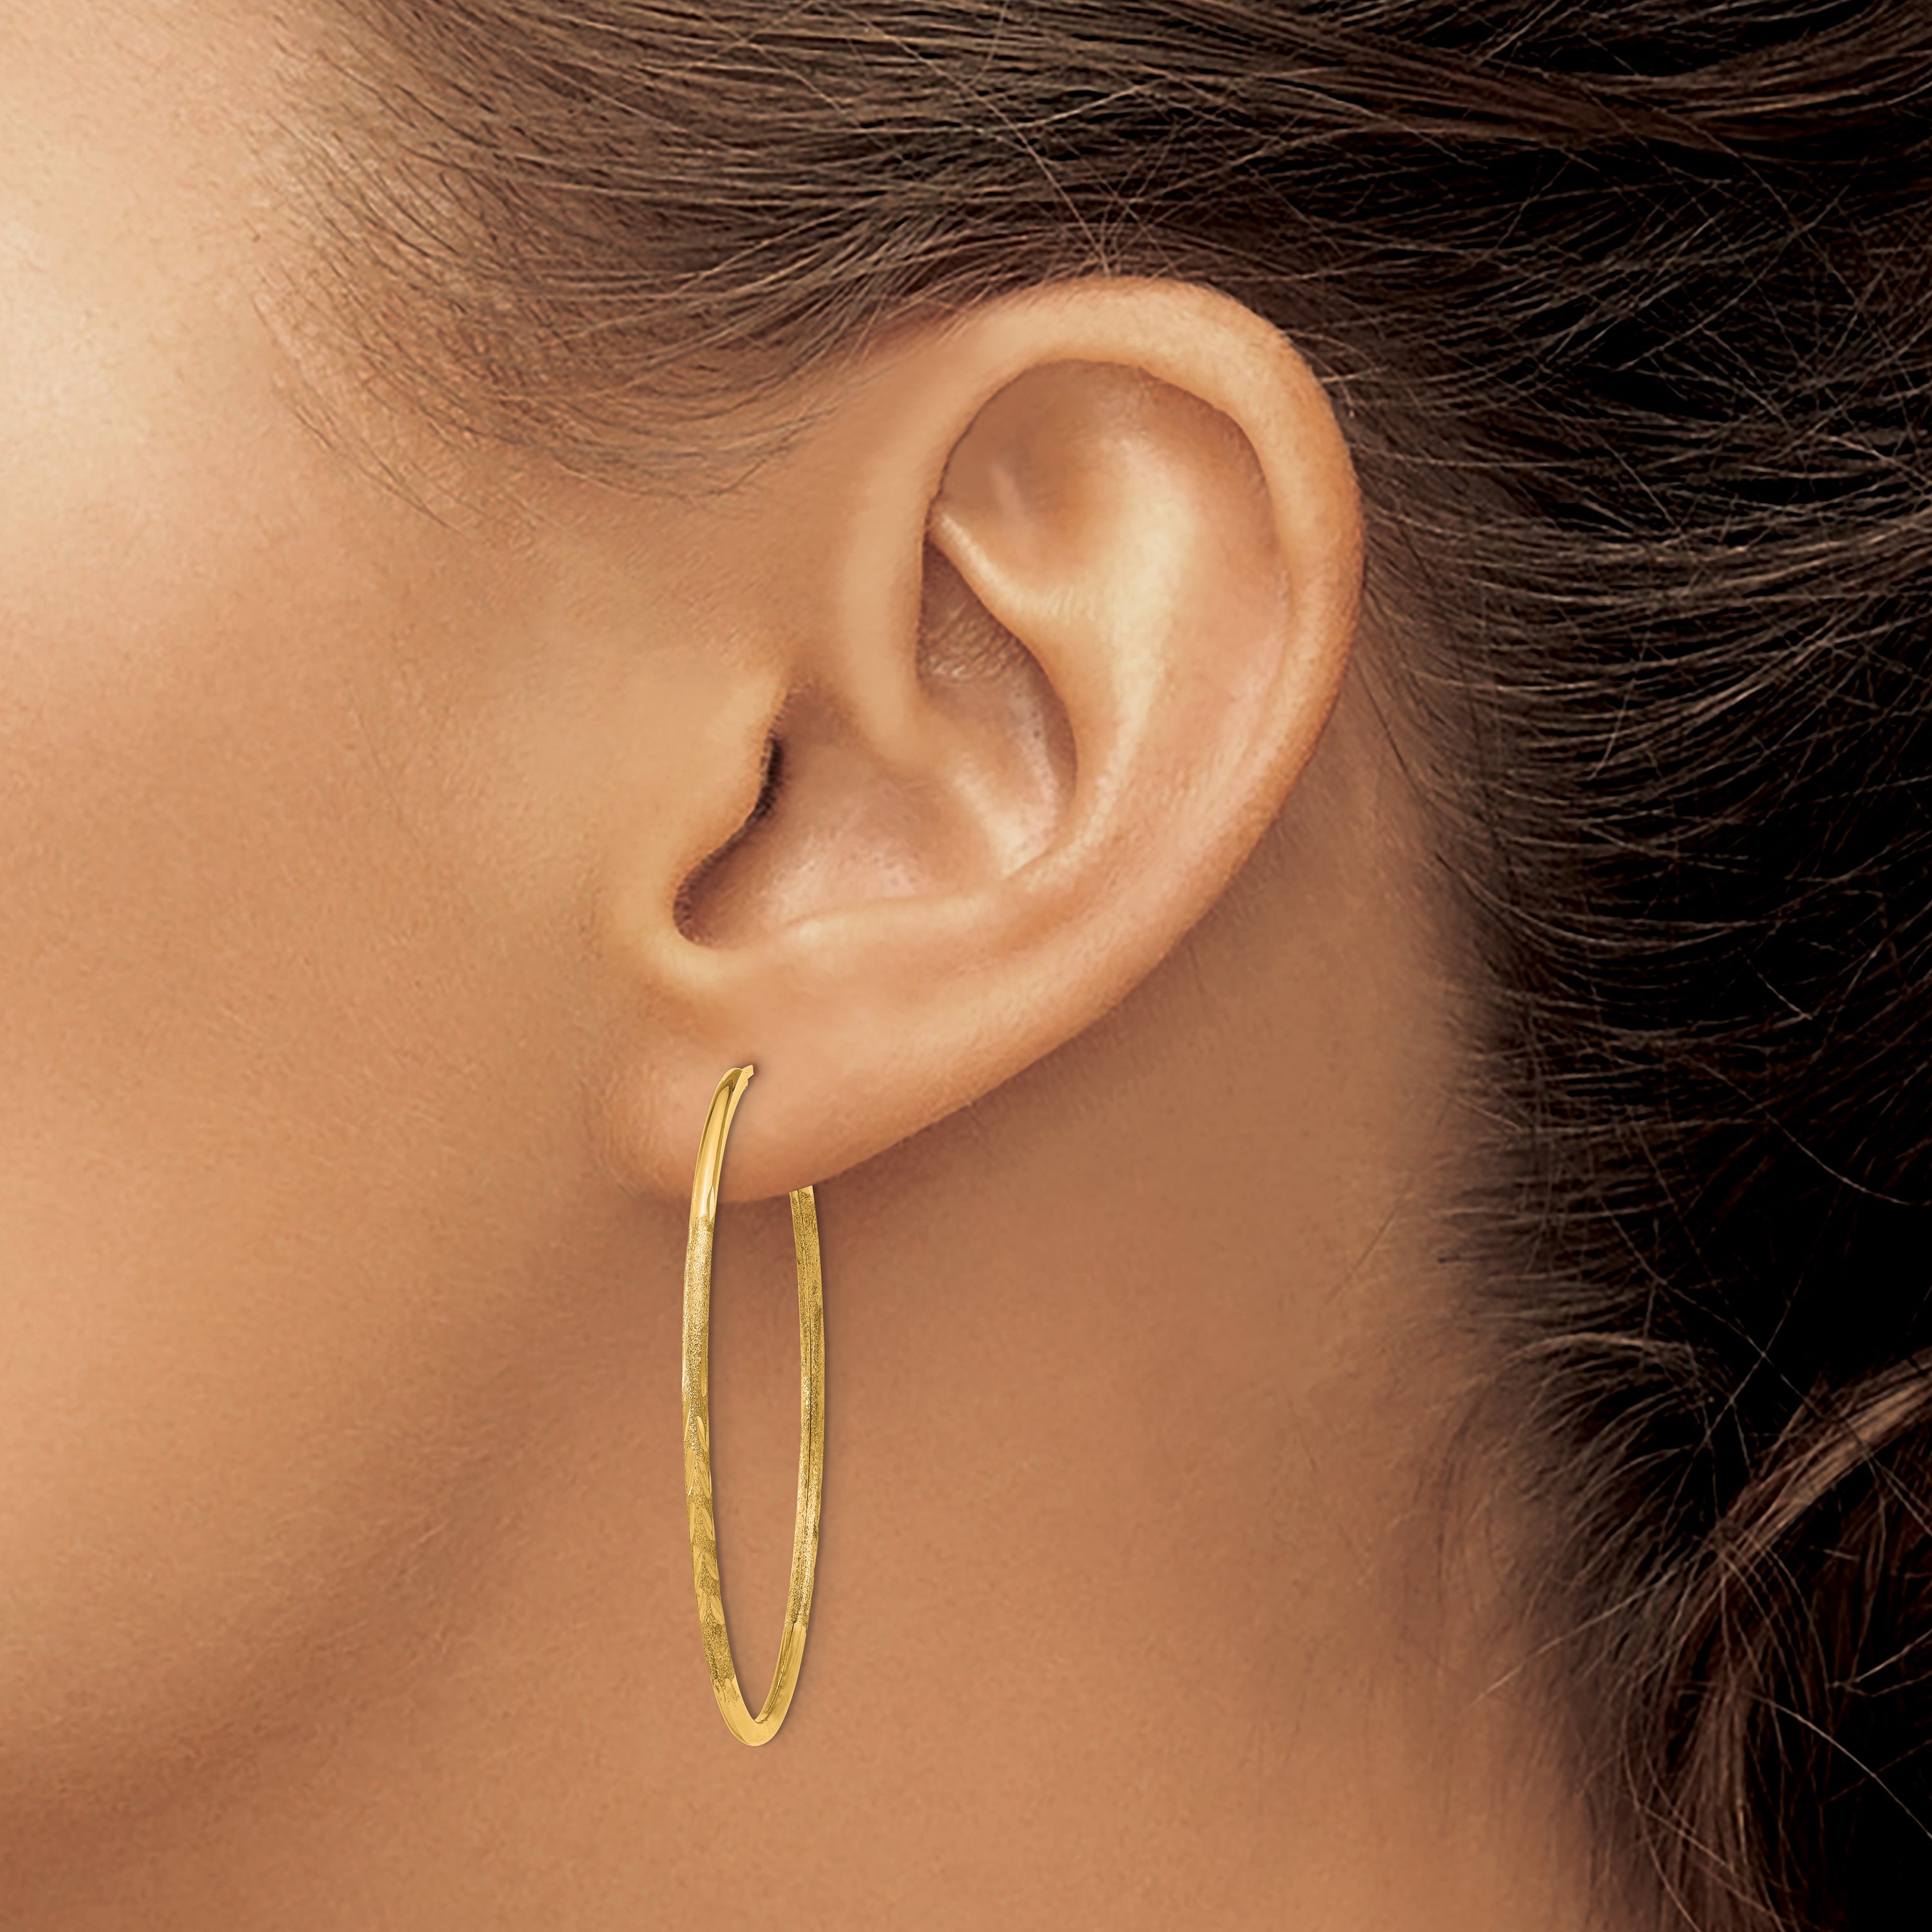 10k 1.5mm Satin Diamond-cut Endless Hoop Earrings